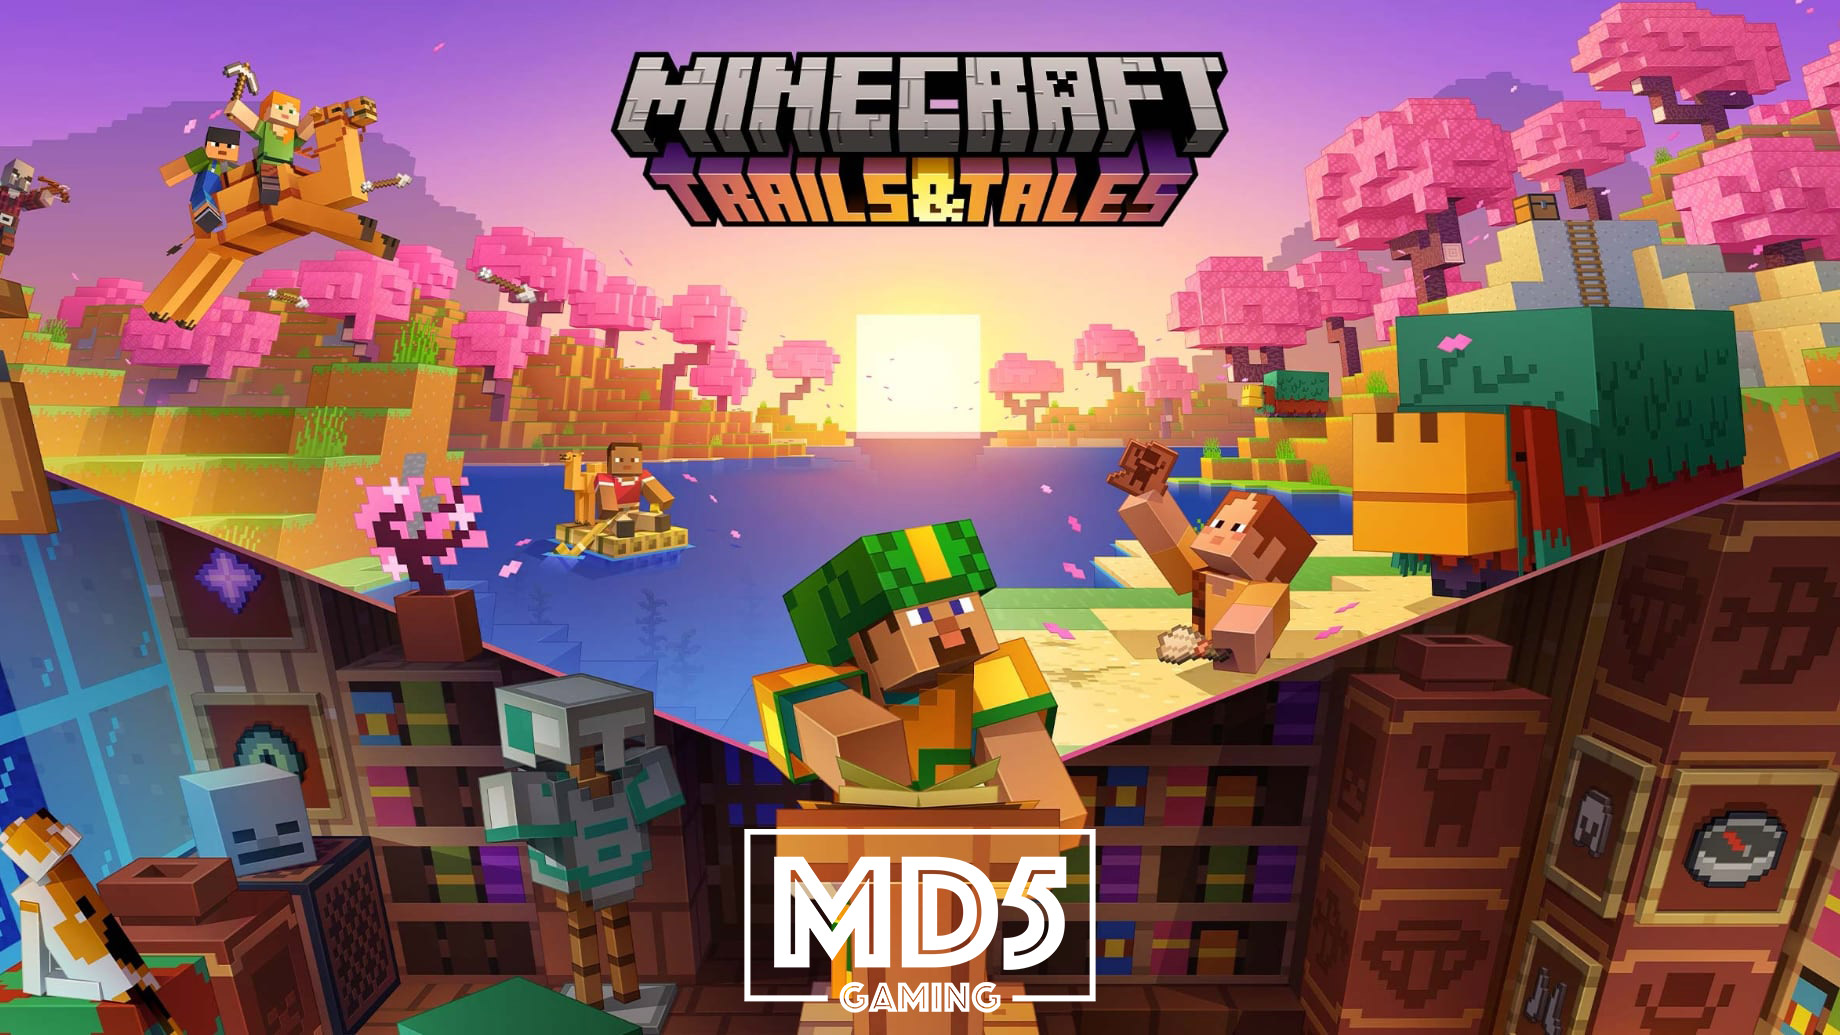 Minecraft 1.20 - Trails & Tails Update